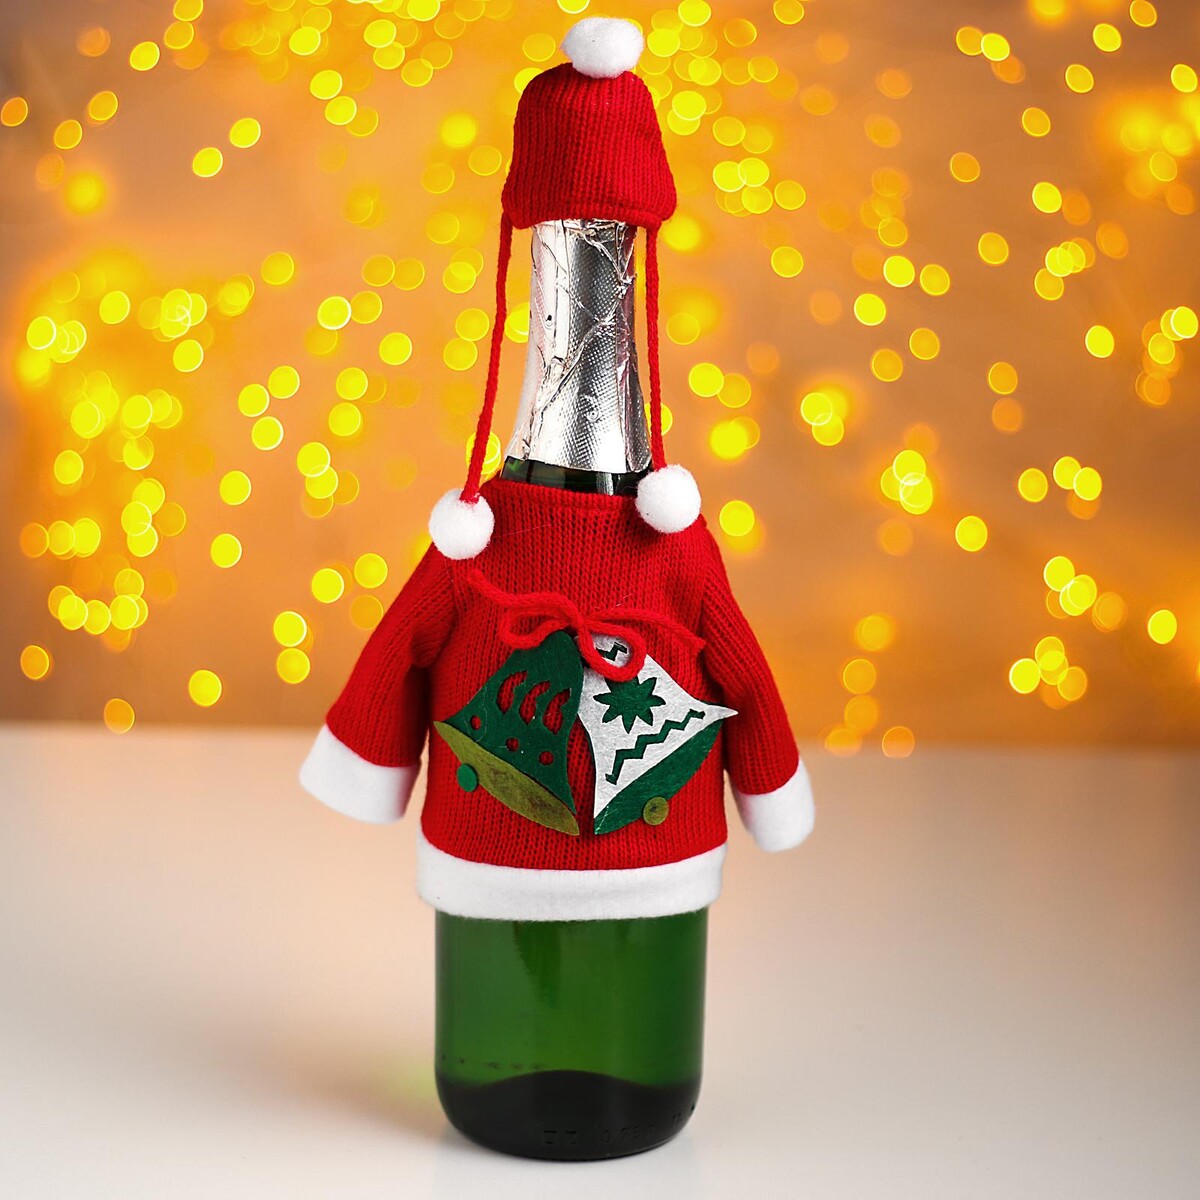 Украшения для бутылок на Новый год - купить в интернет-магазине hb-crm.ru